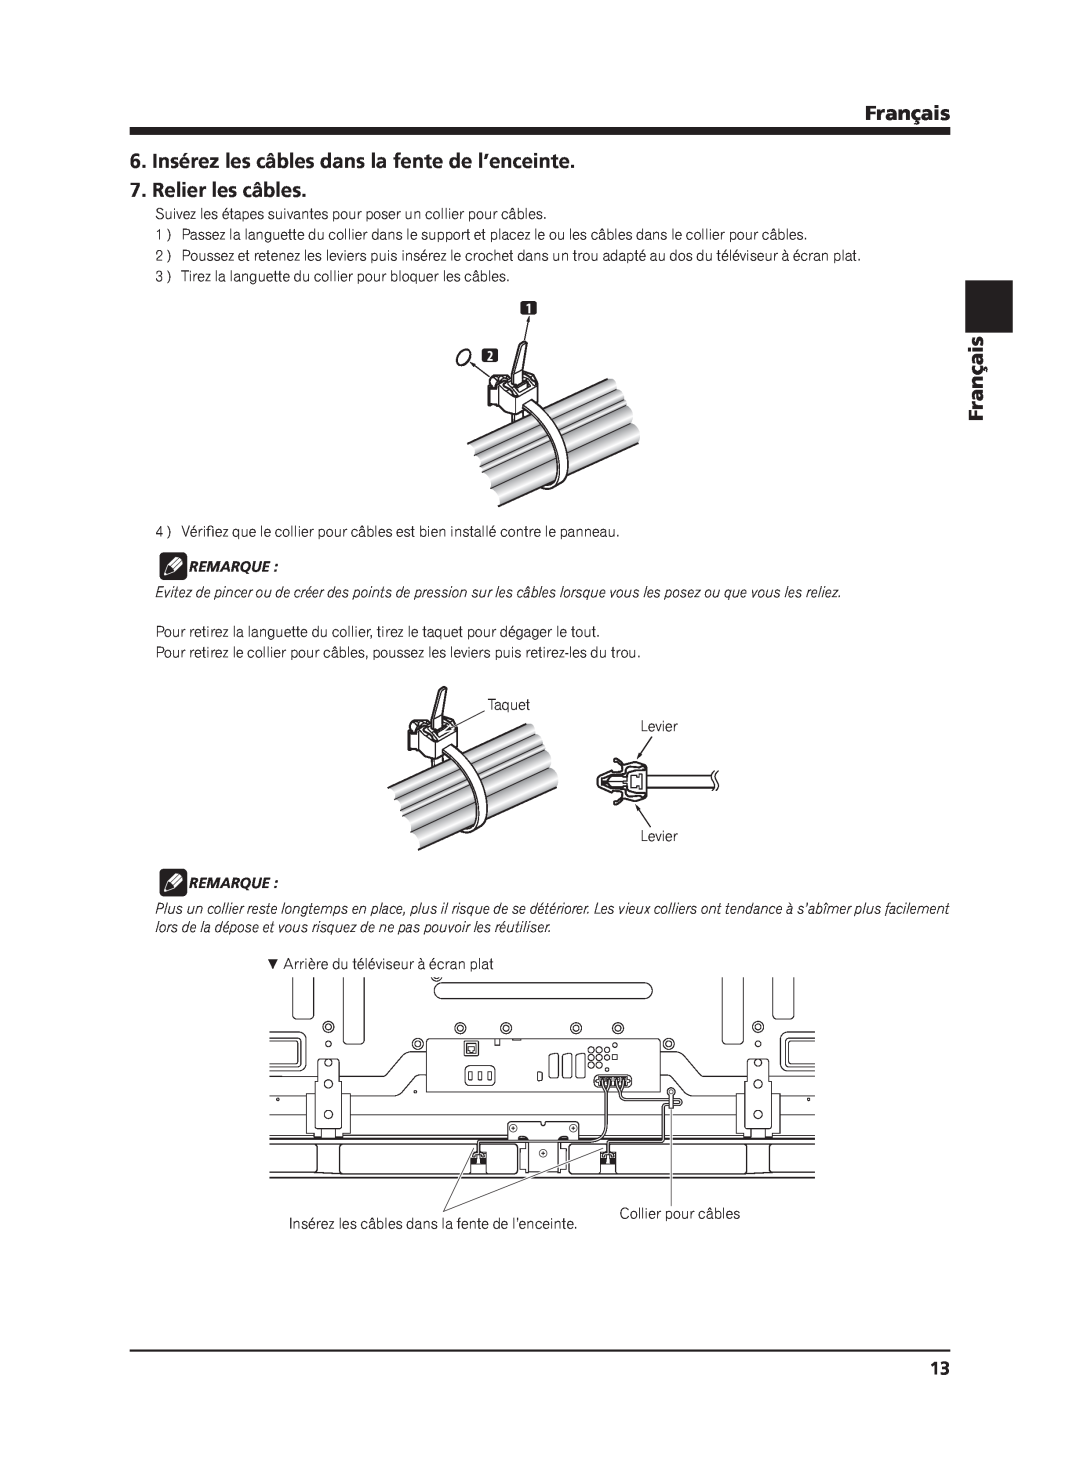 Pioneer PDP-S65 manual 6.Insérez les câbles dans la fente de l’enceinte, Relier les câbles, Français, Remarque 